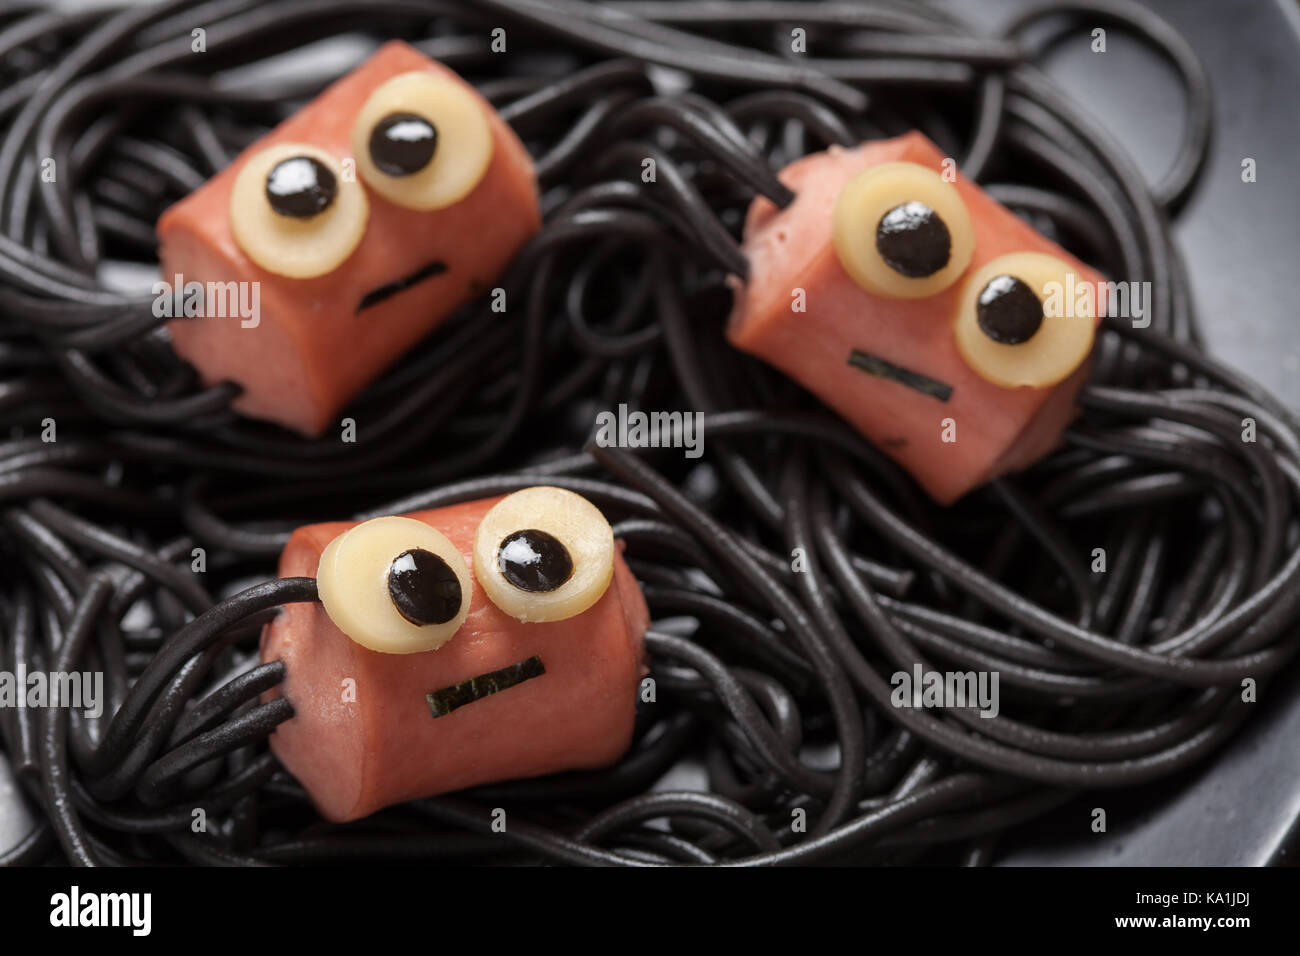 Wurst und Spaghetti lustig Spinnen für Halloween Kinder Mittagessen  Stockfotografie - Alamy